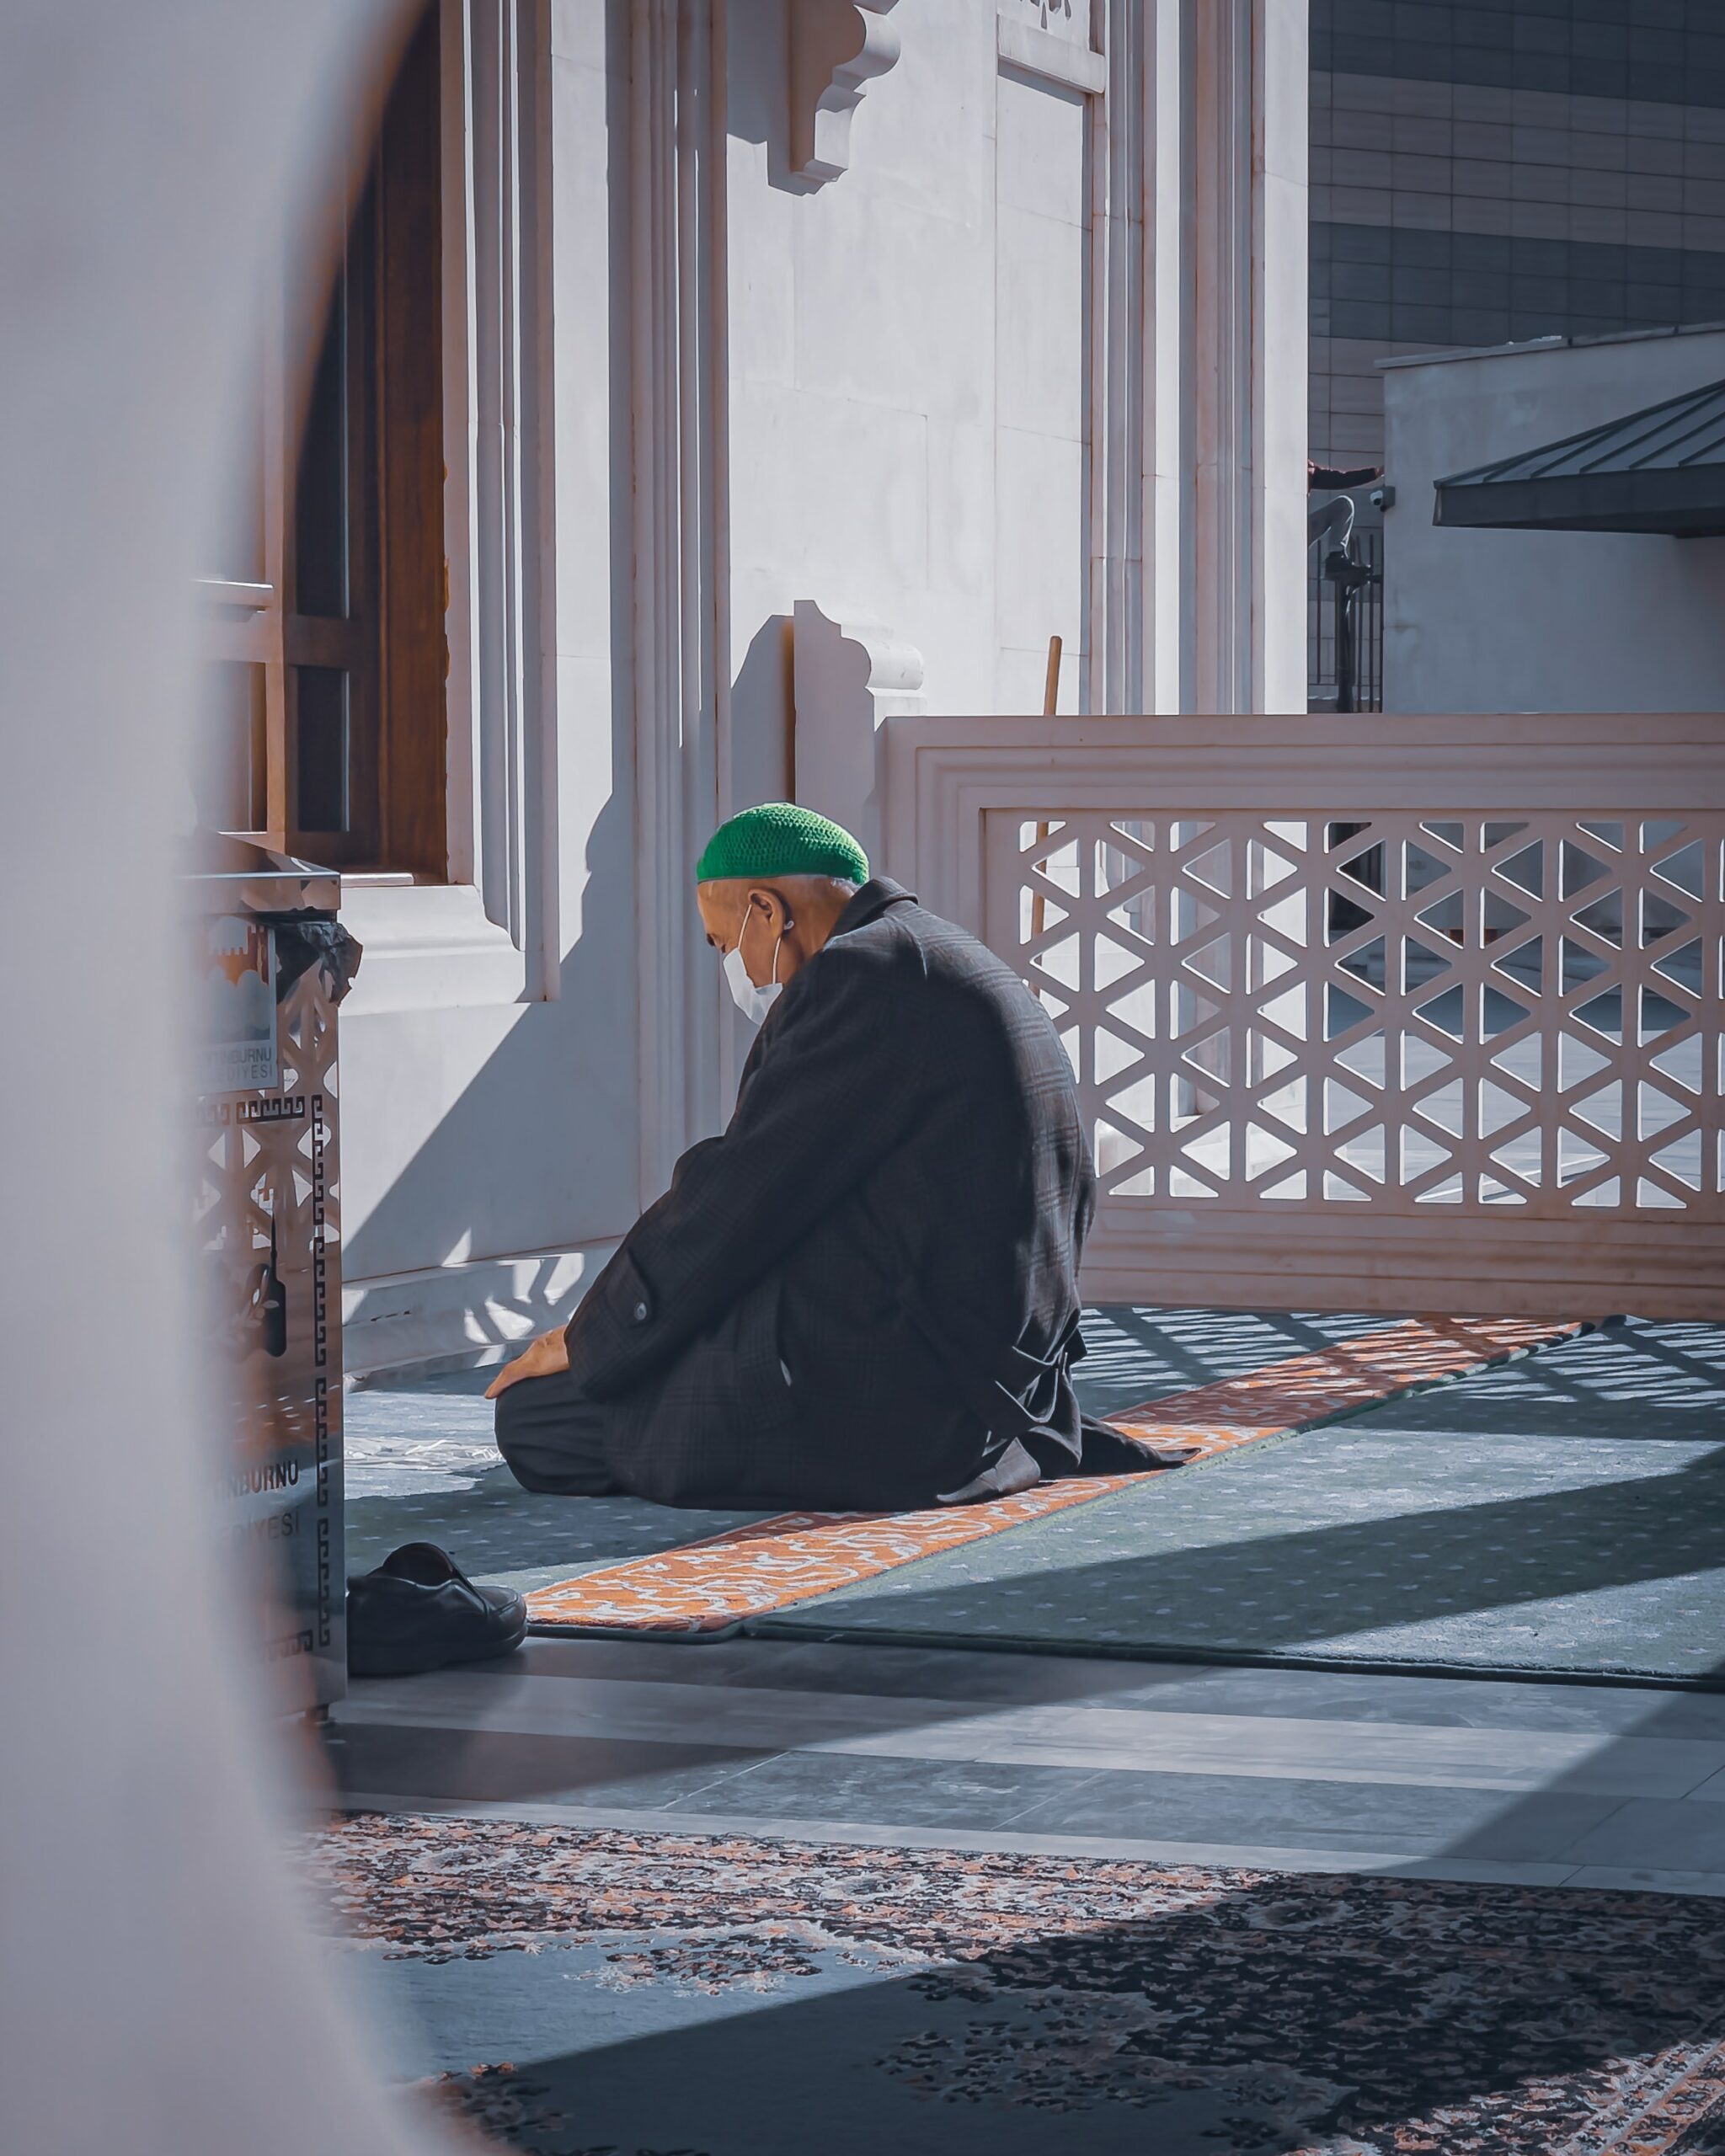 النداء لصلاة الجمعة وأذان المغرب في رمضان من الآن وصاعدًا في راونهايم